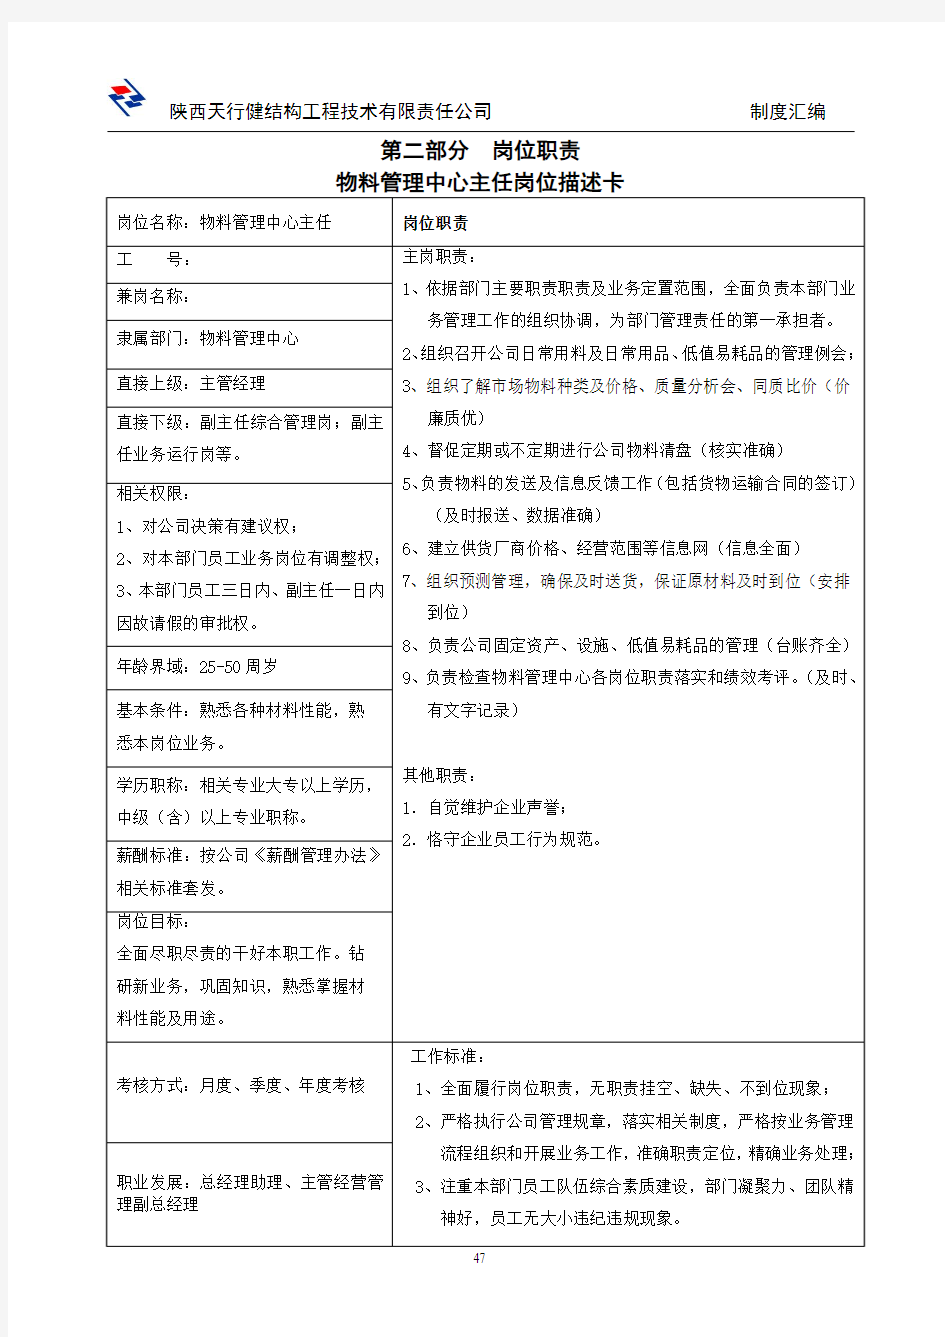 物料中心制度(定版)2014.6.17-3.5